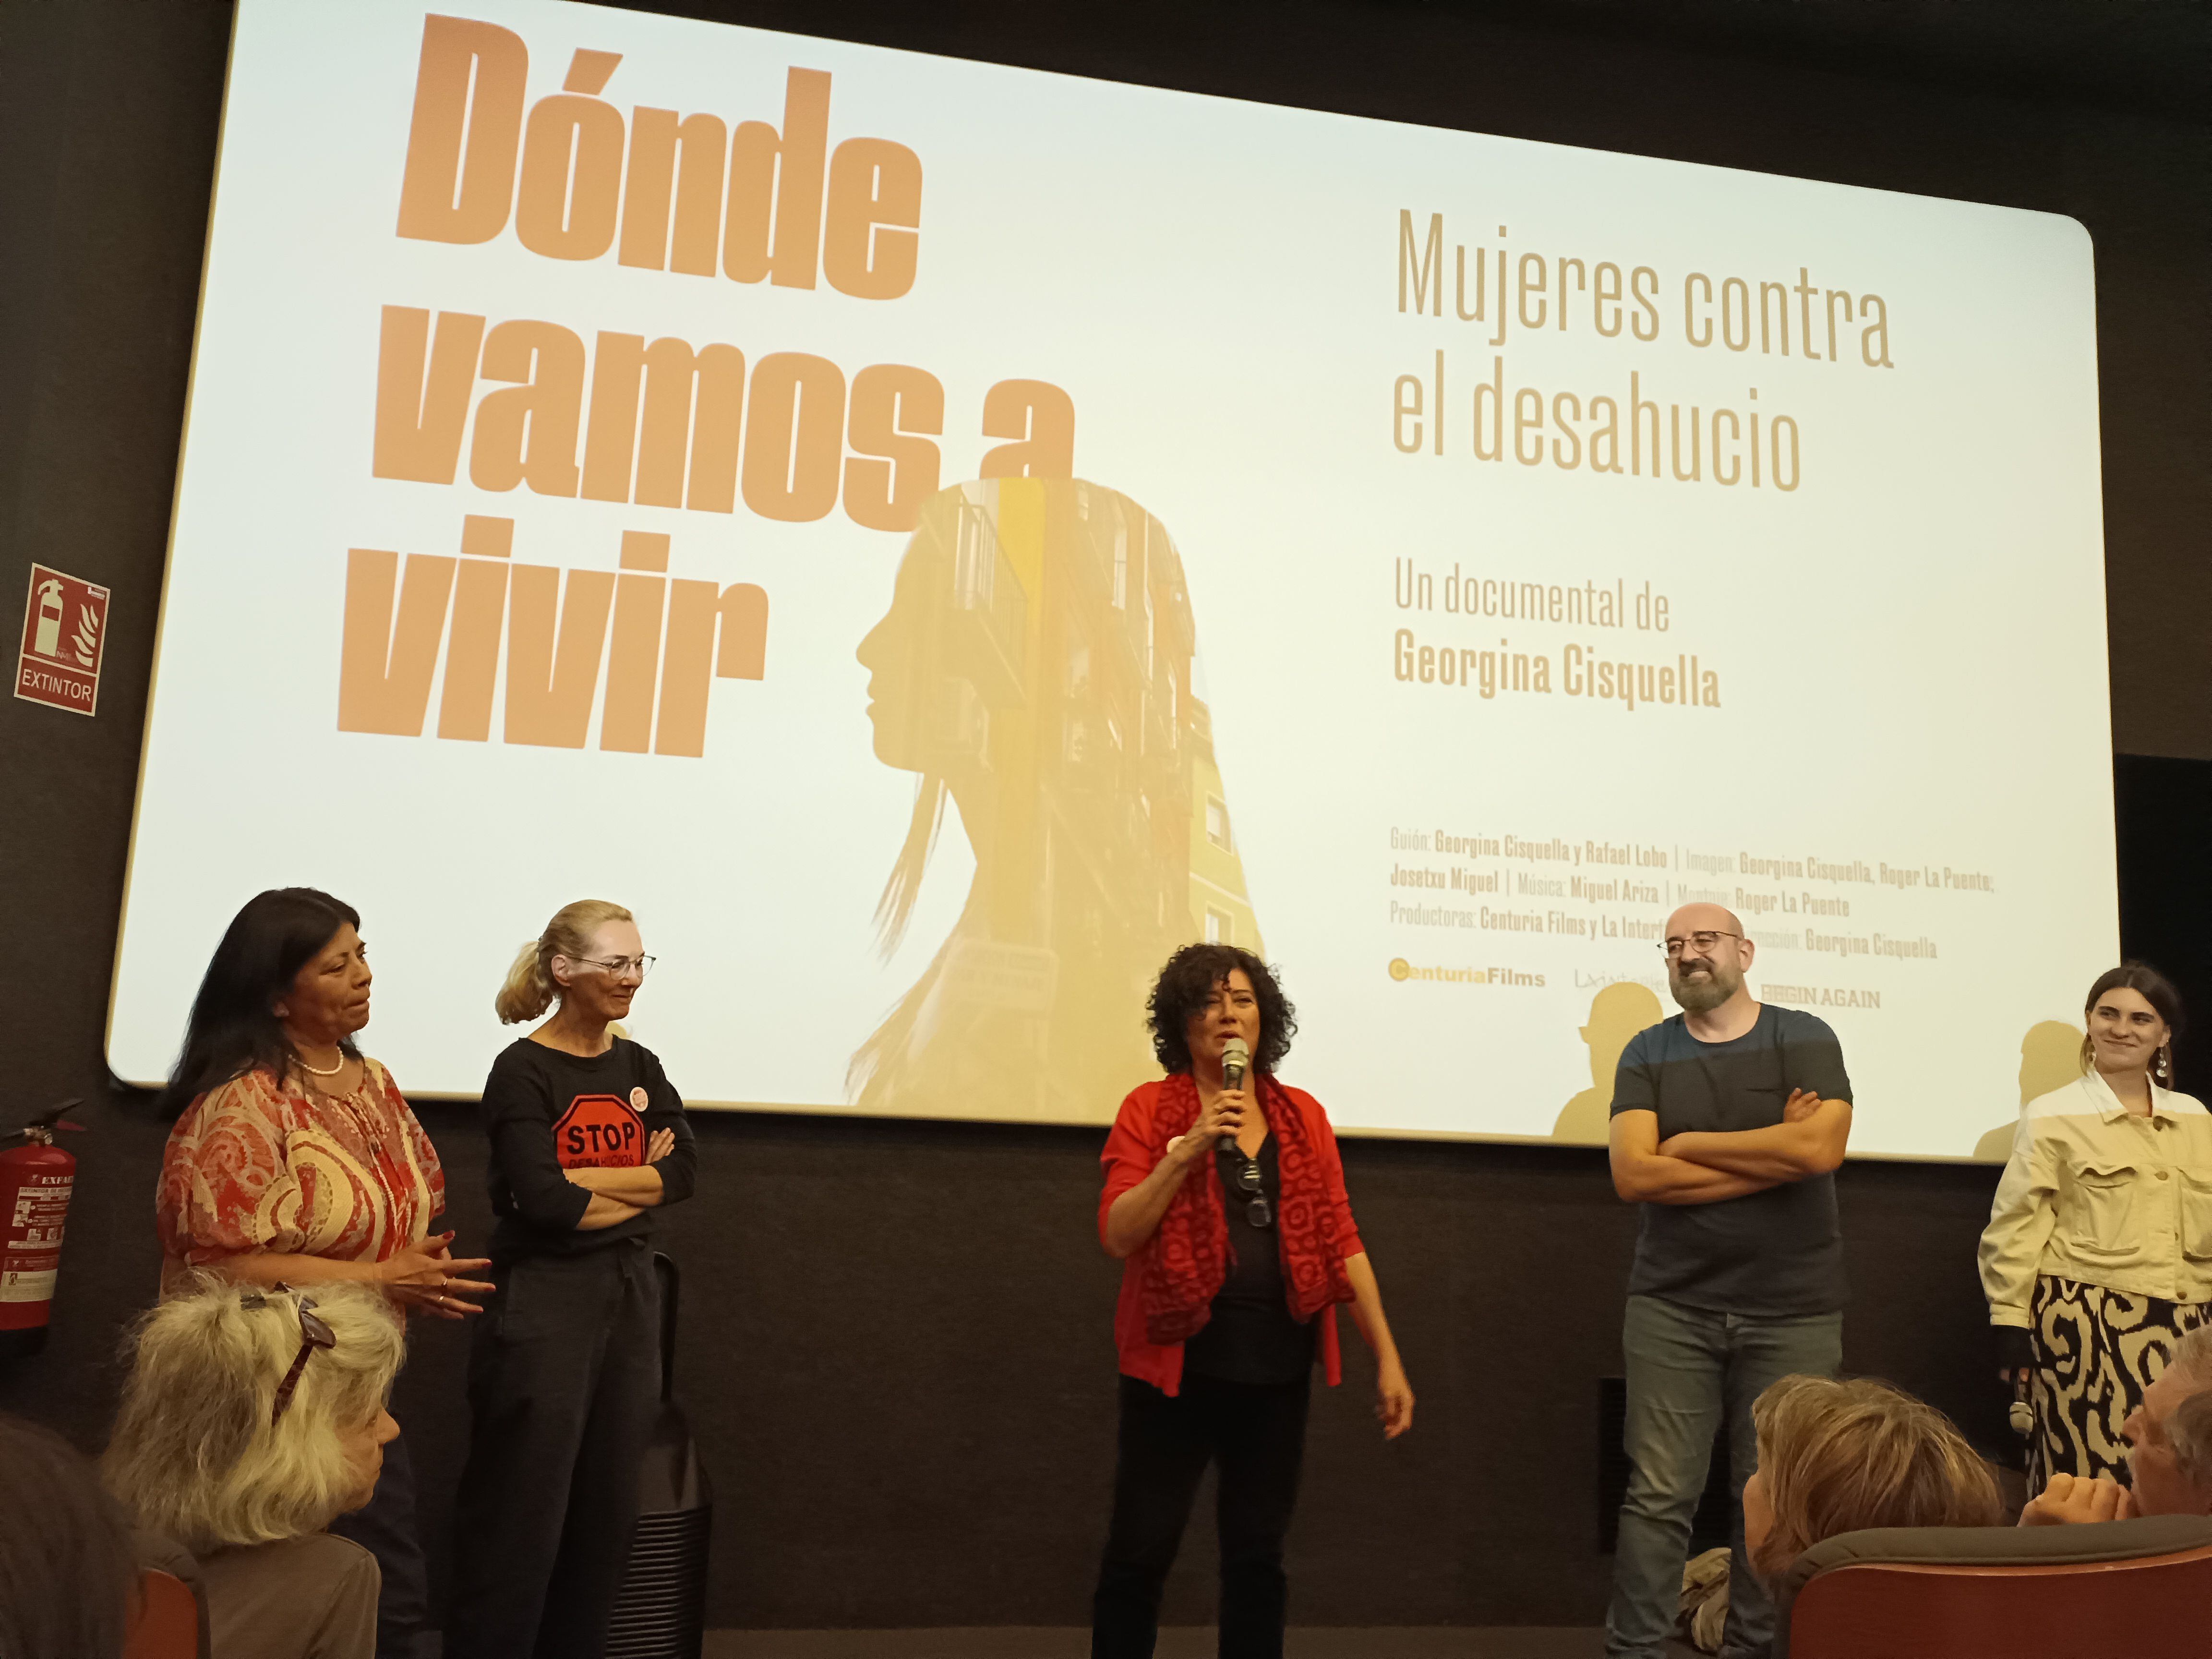 Presentación del documental '¿Dónde vamos a vivir? Mujeres contra el desahucio', dirigido por Giorgina Cisquella. (M.G.A.)